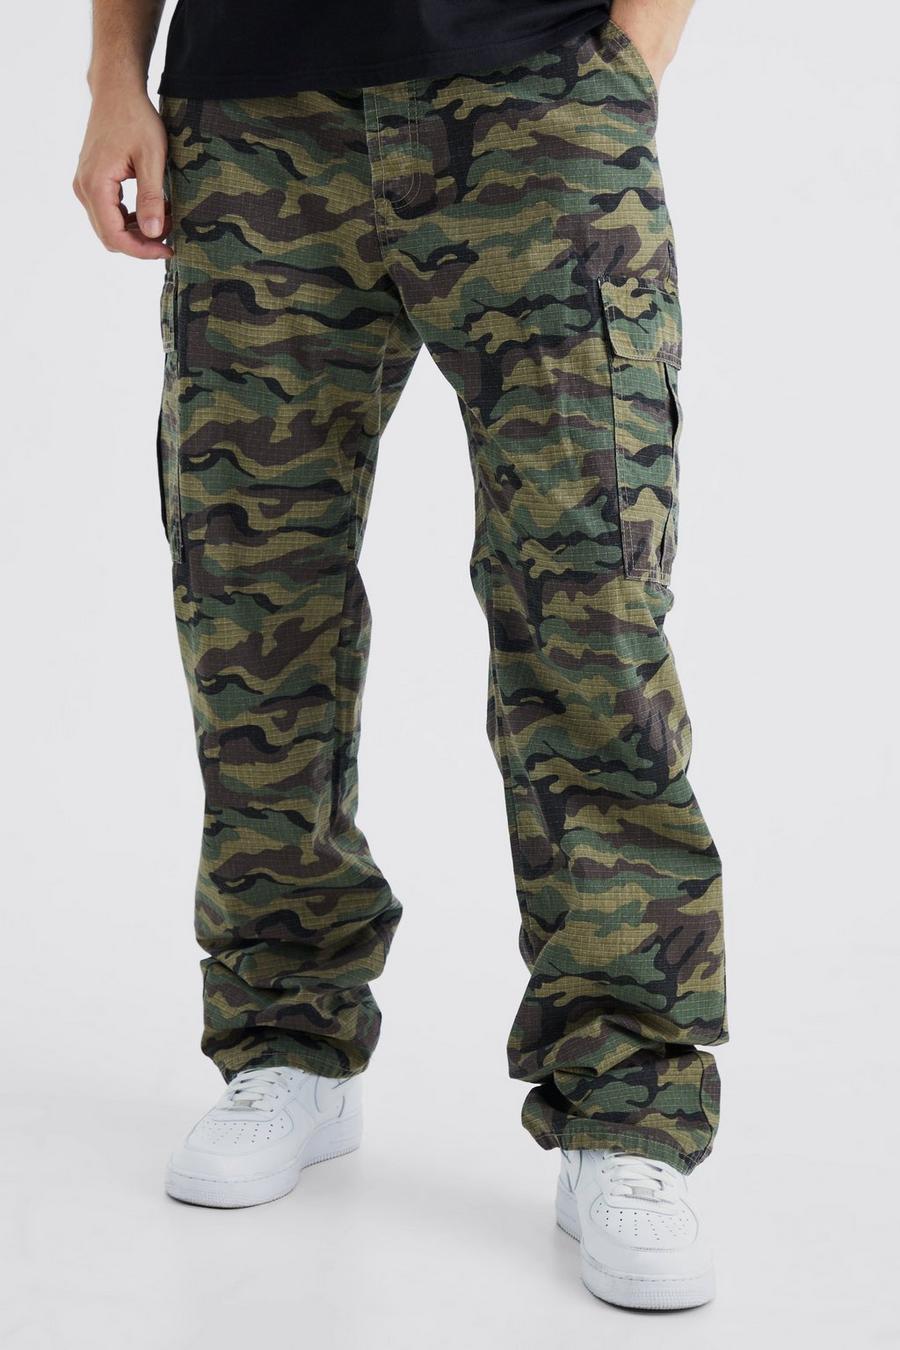 Pantaloni Cargo Tall rilassati in nylon ripstop in fantasia militare con laccetti sul fondo, Khaki image number 1